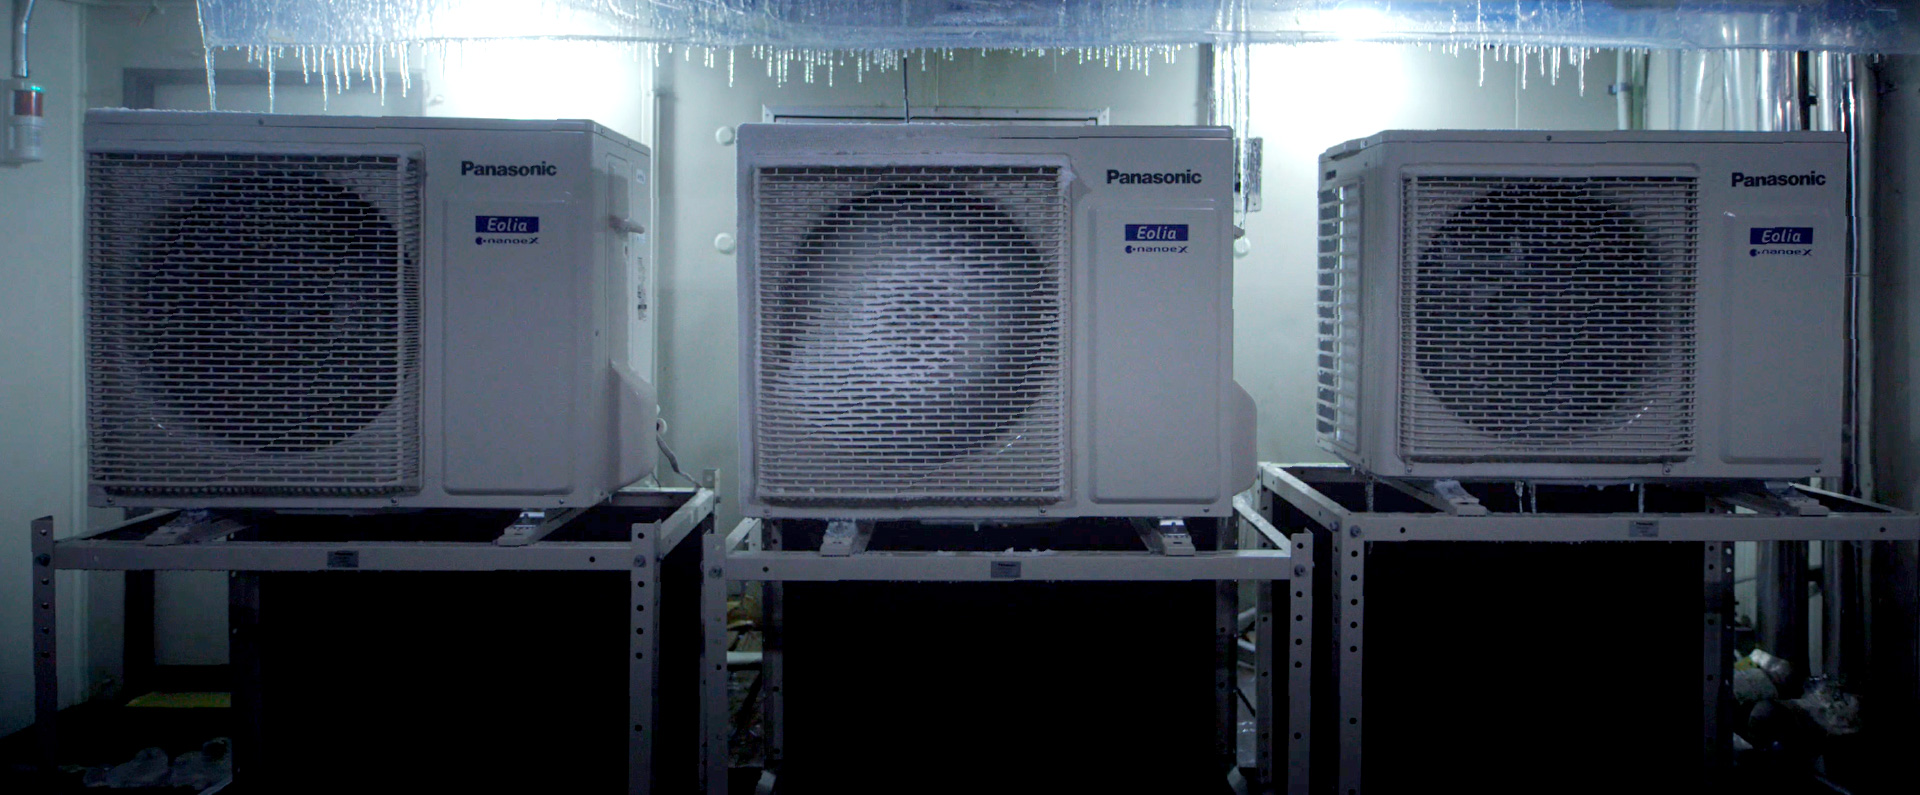 極寒の部屋で実験中の室外機の画像です